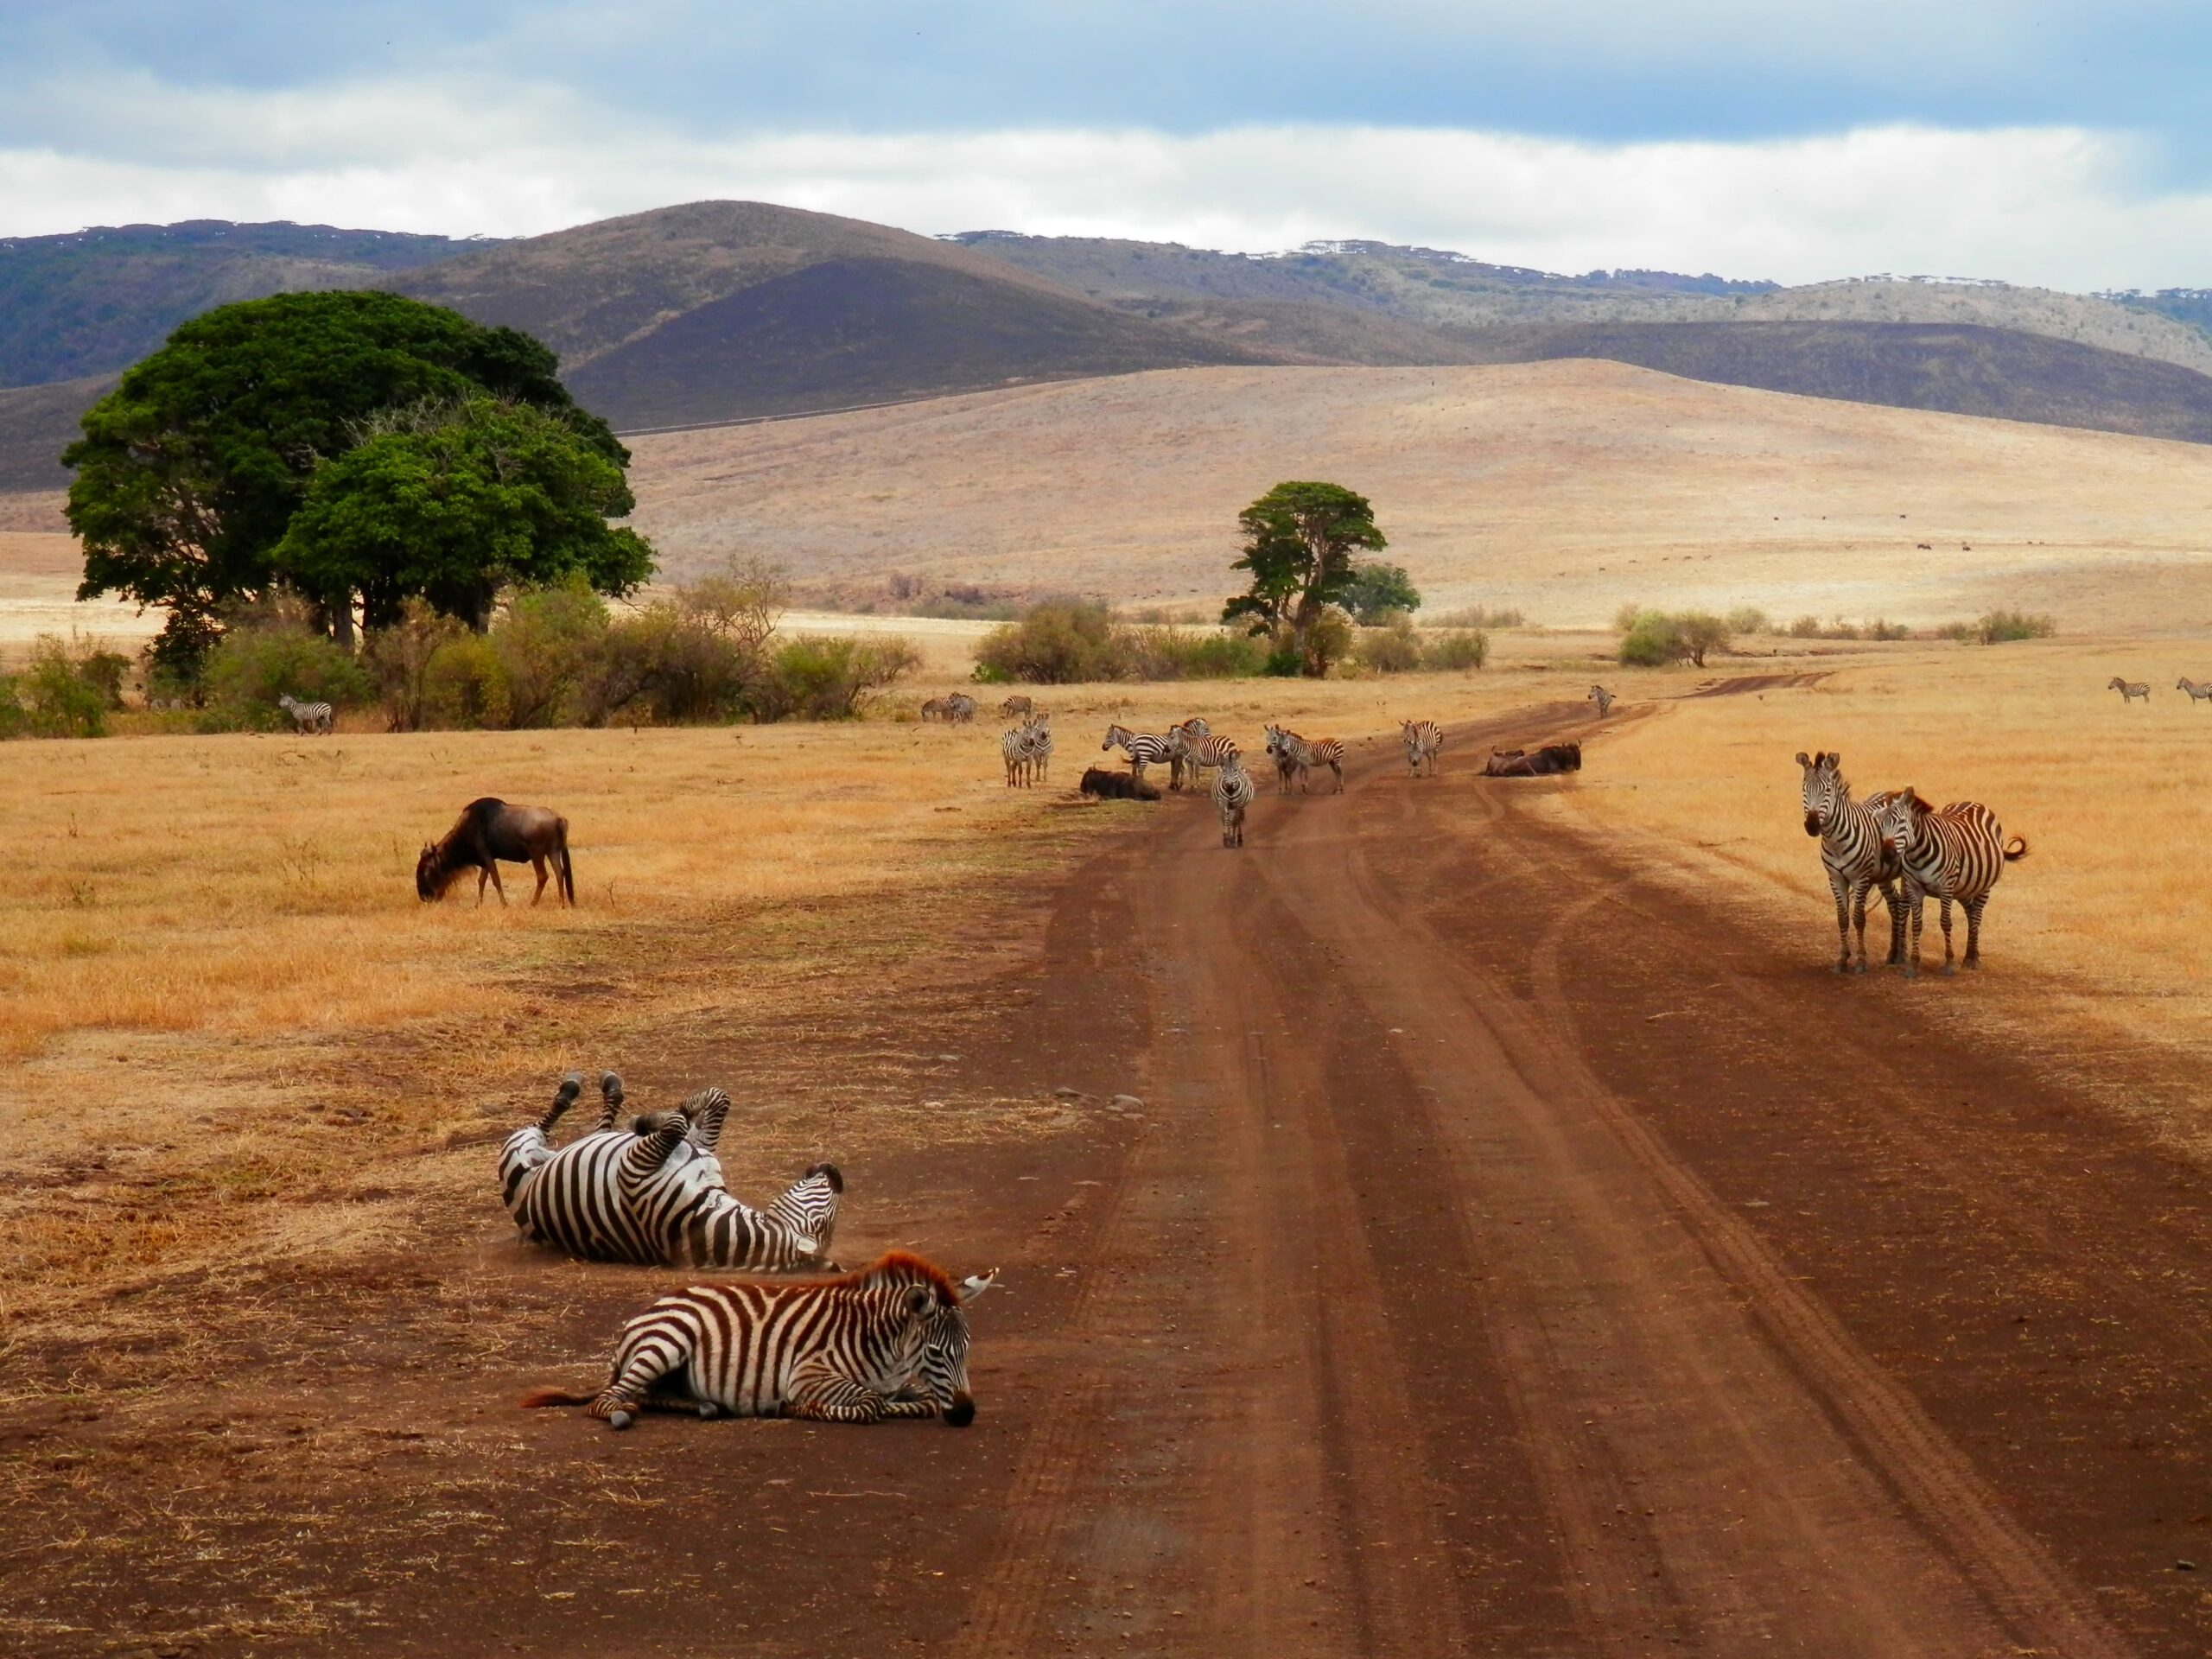 Zebras having fun in Tanzania